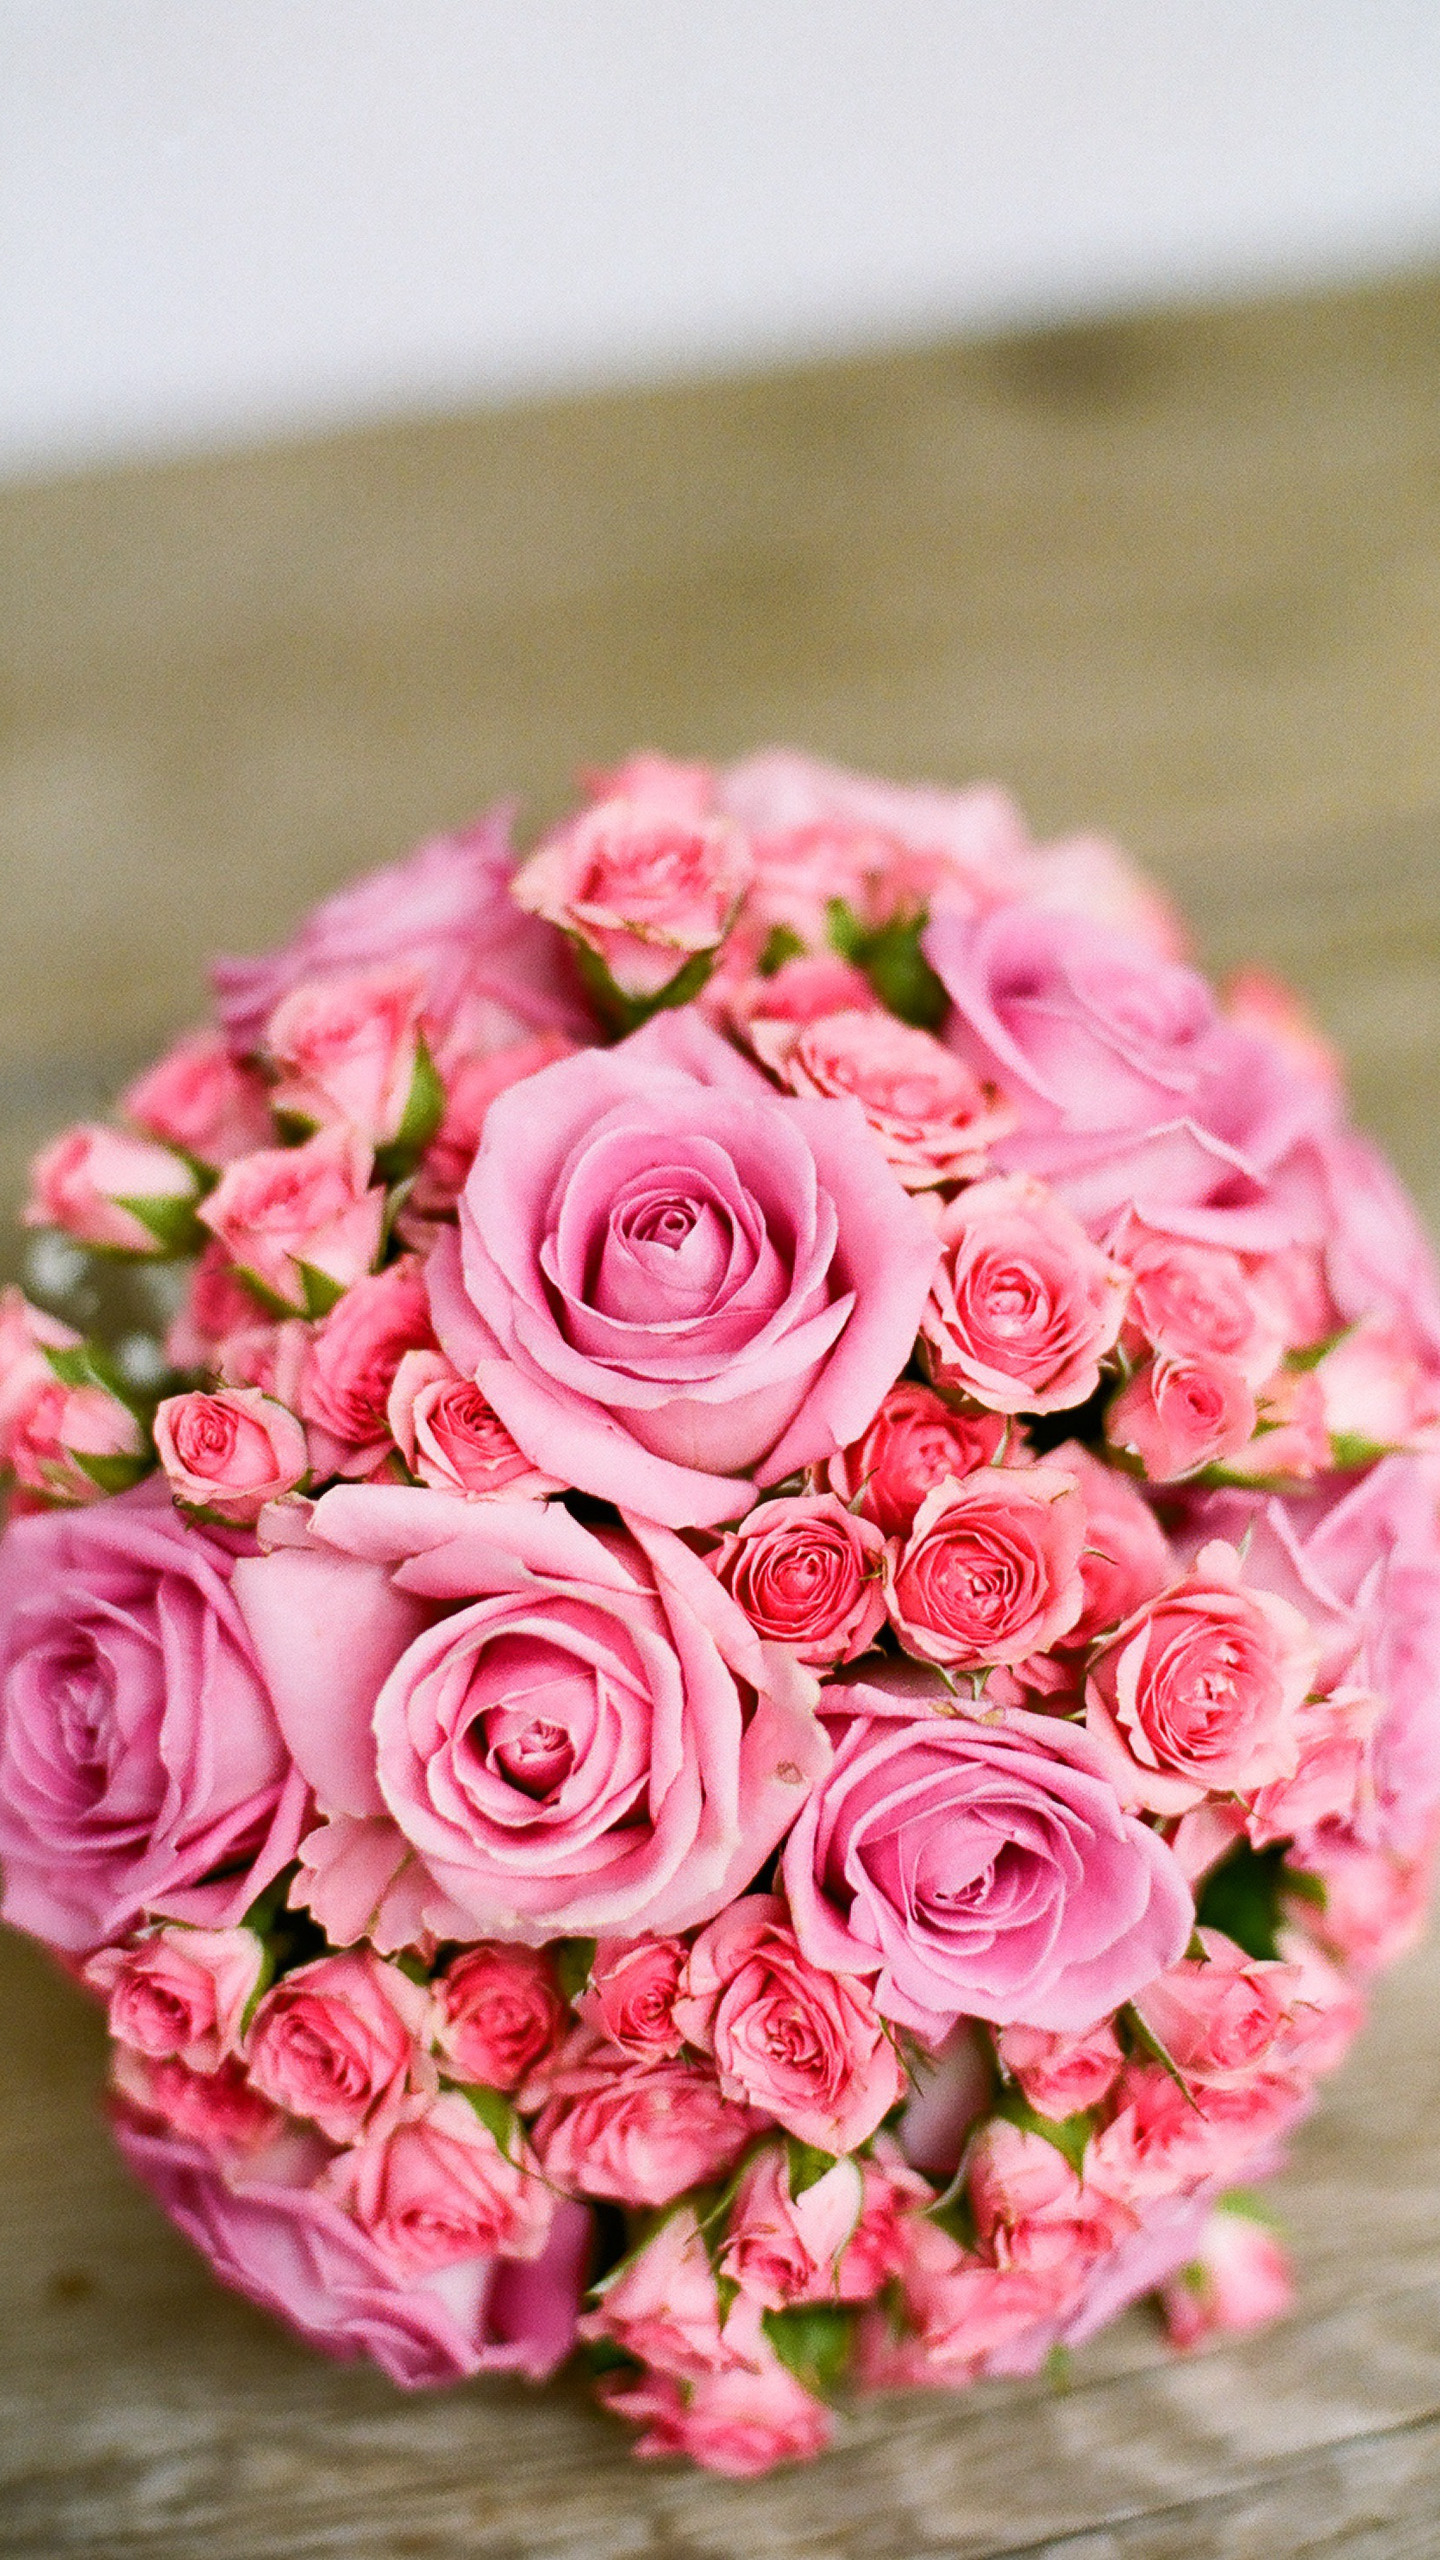 盛开的玫瑰花唯美植物摄影手机壁纸